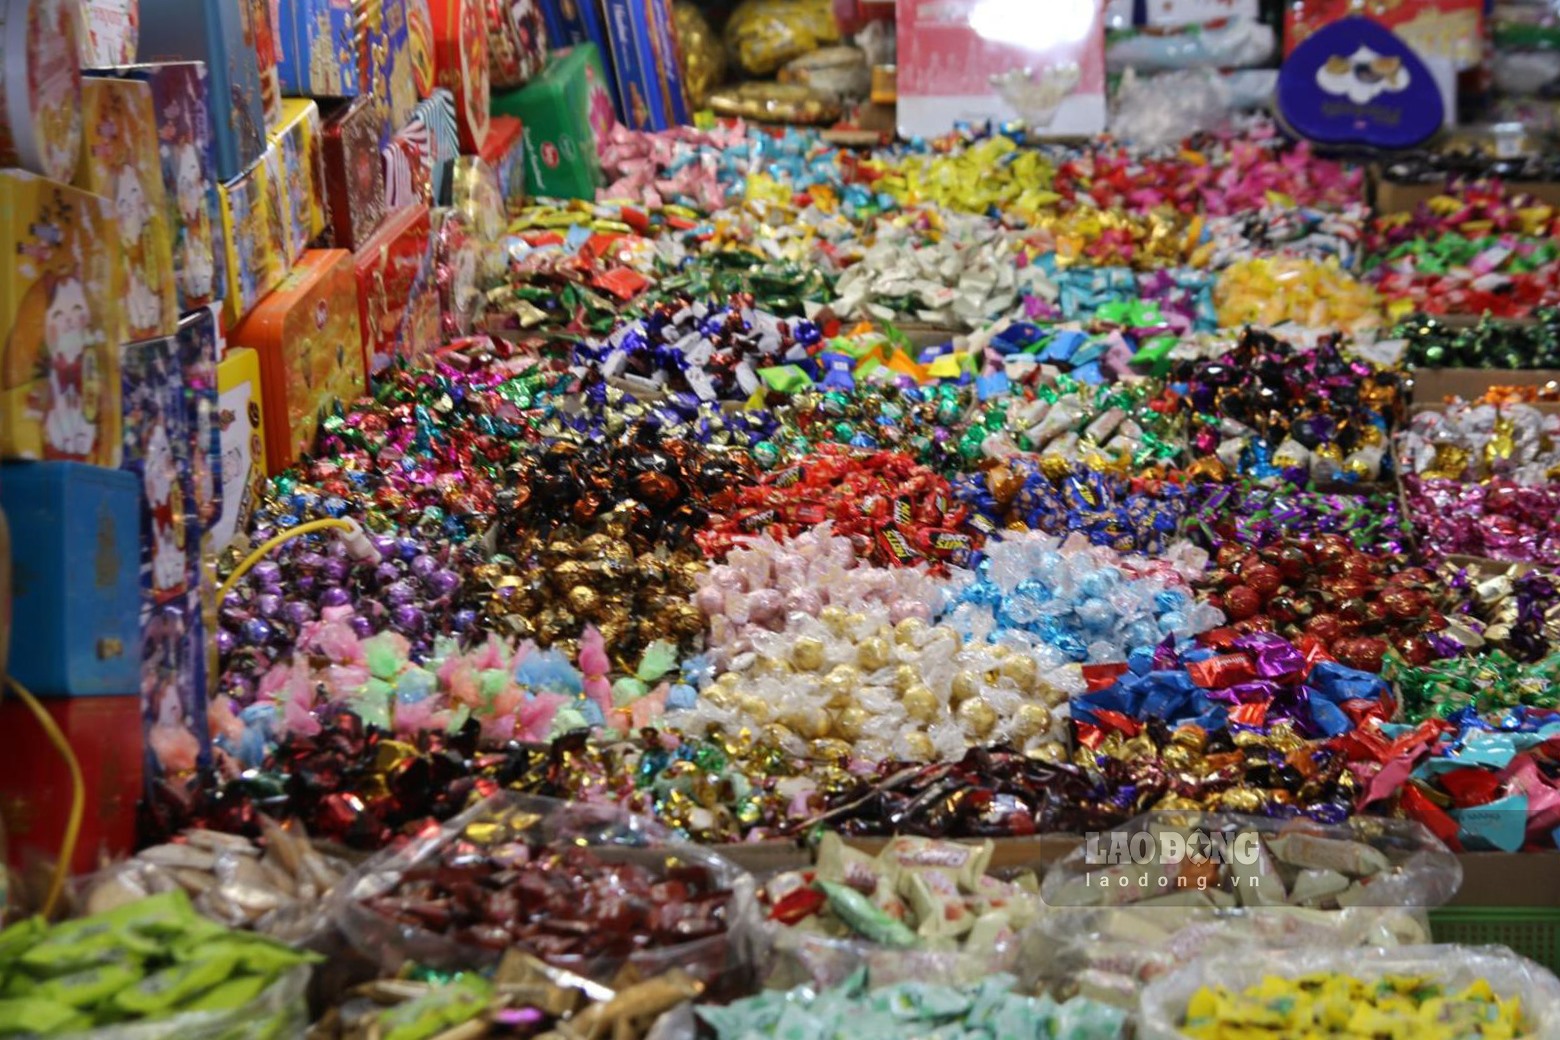 Theo ghi nhận, các loại kẹo tại đây có giá từ 150.000 đồng - 250.000 đồng/cân tùy theo loại.